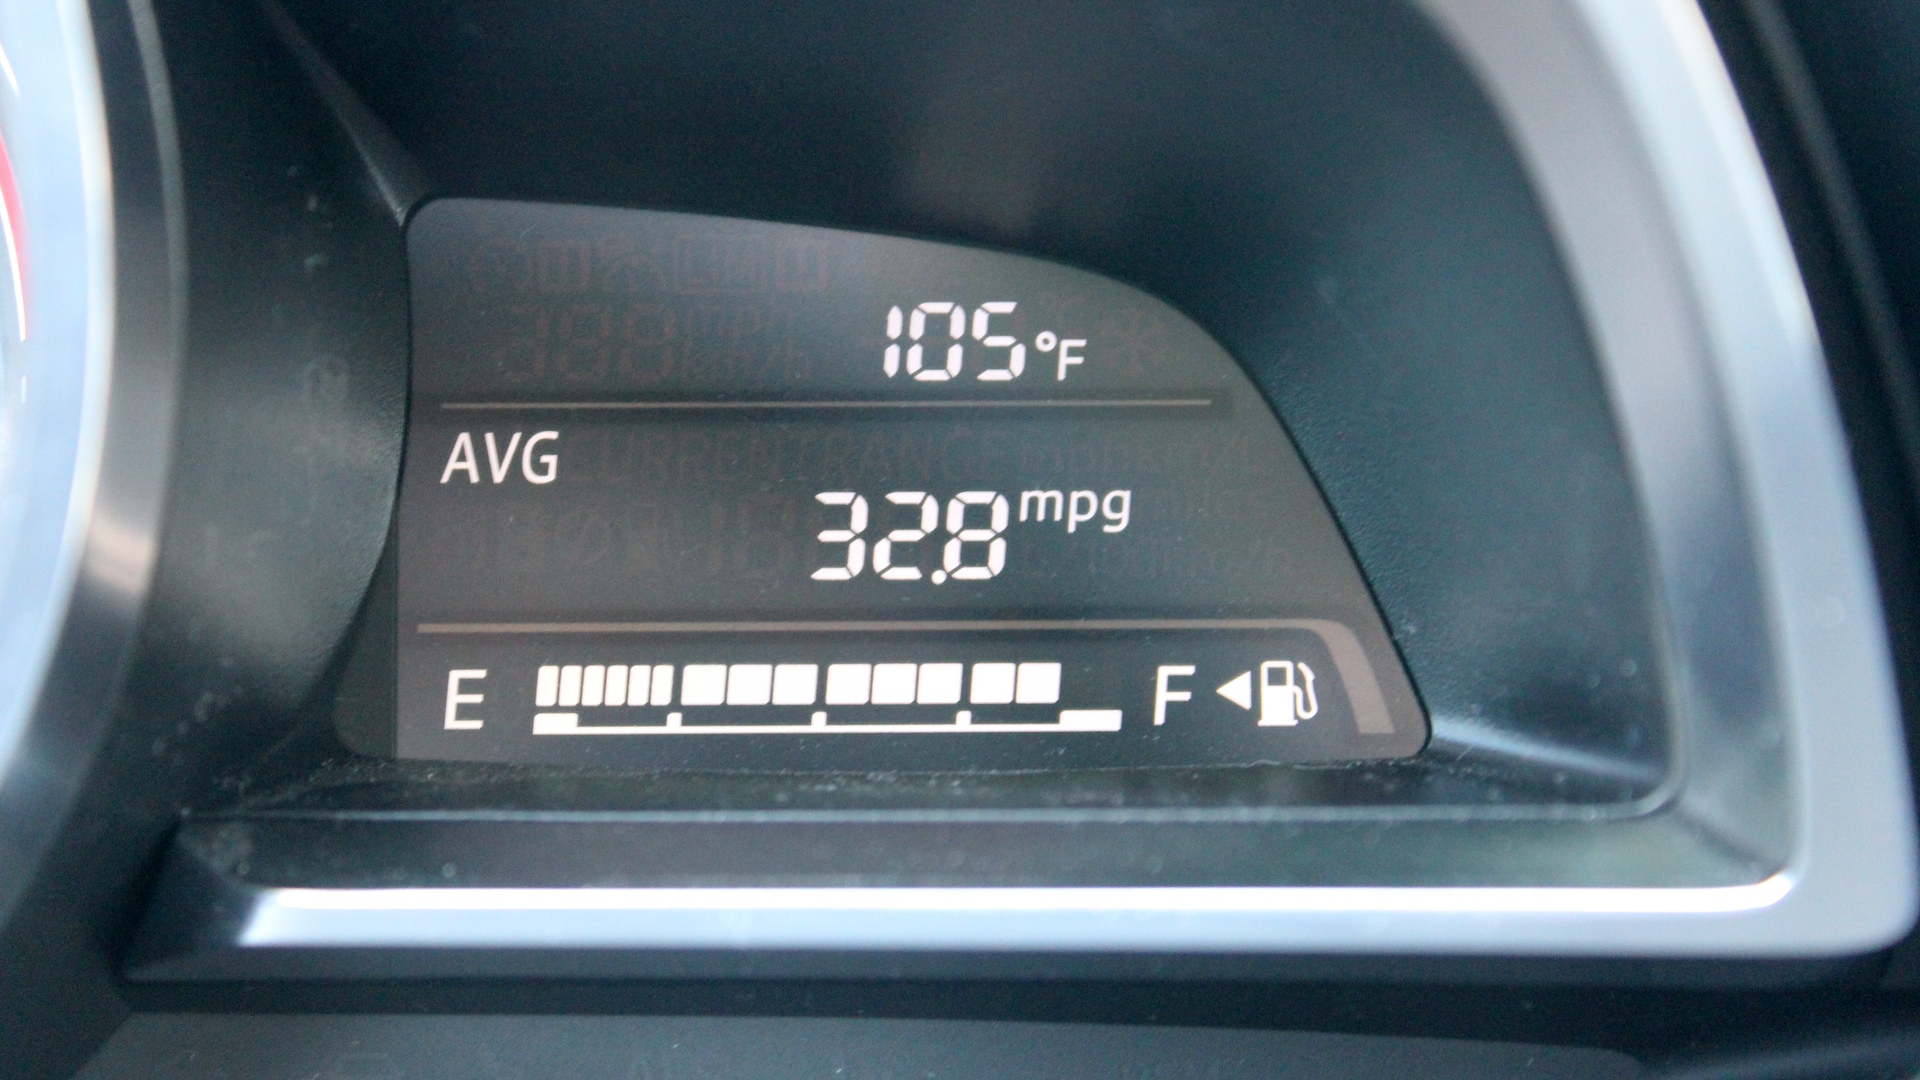 May 14, 2014 105 degree Fahrenheit